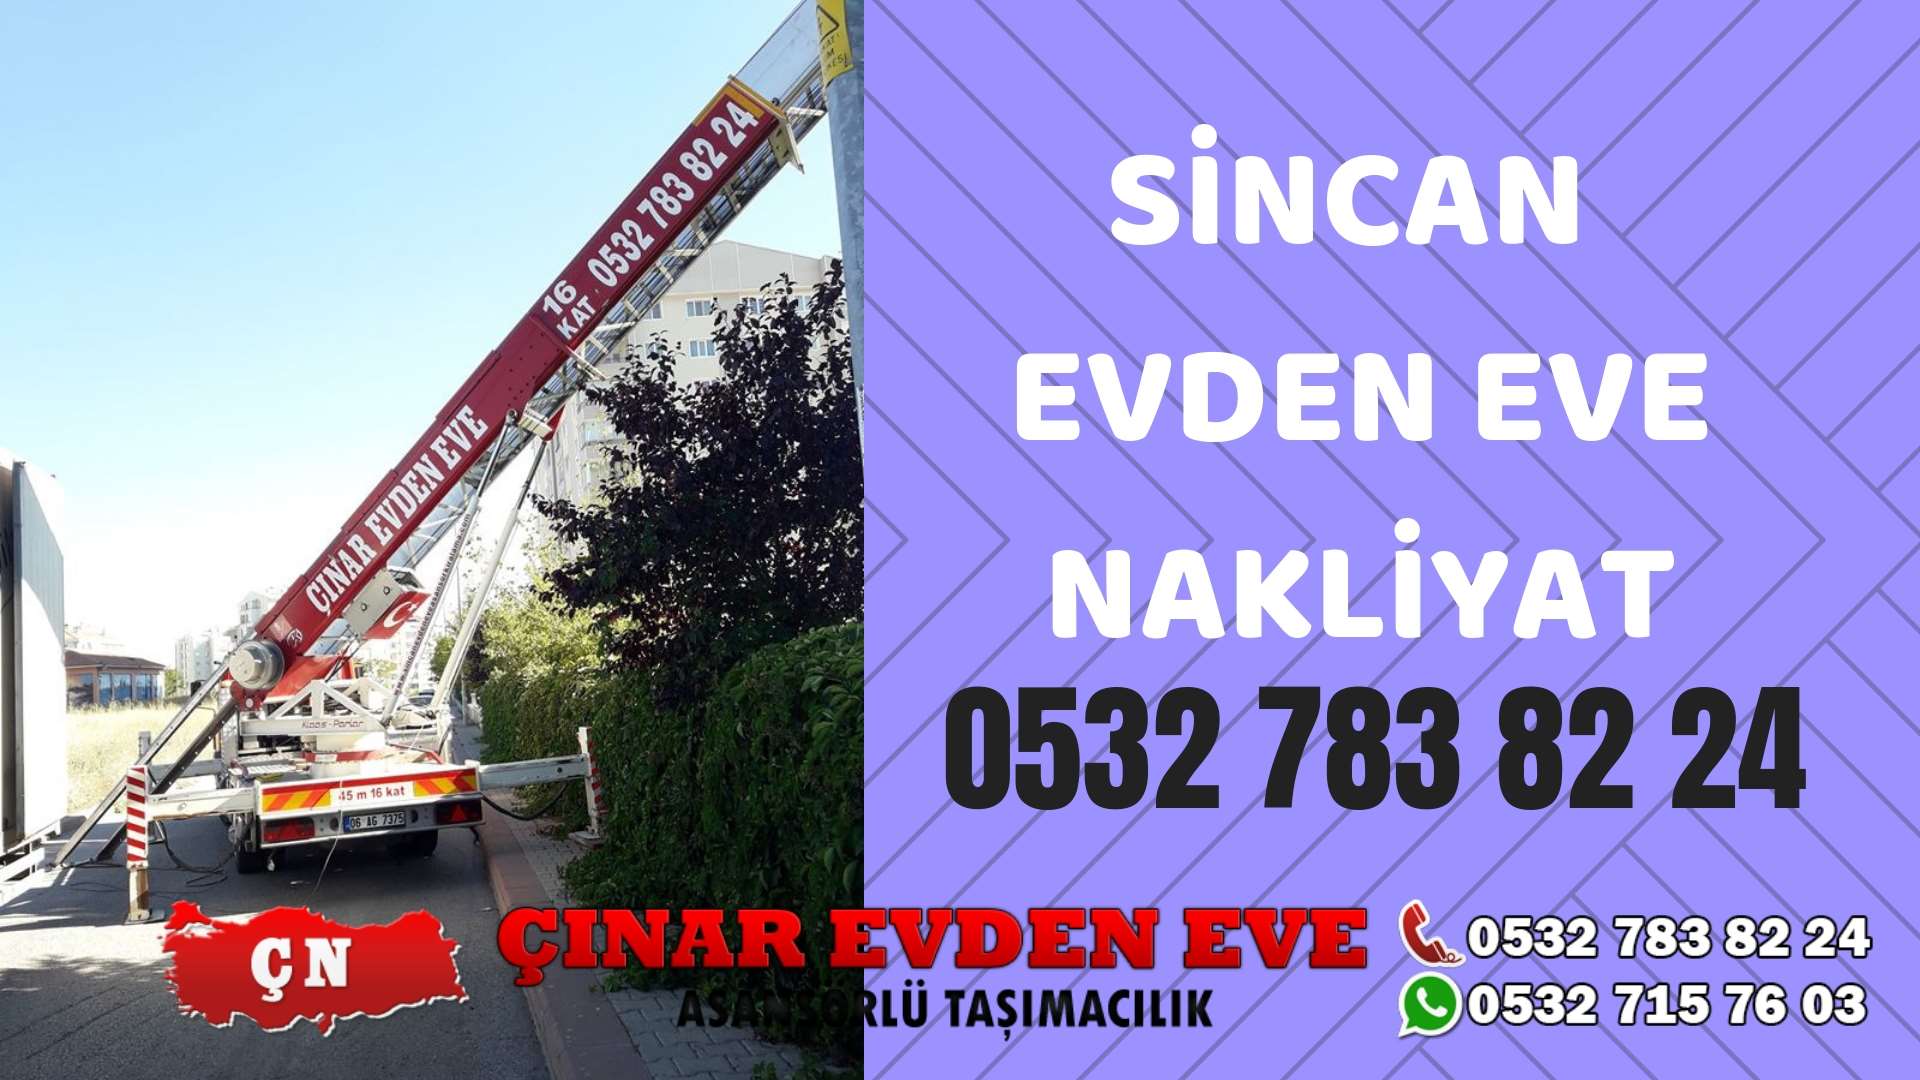 Ankara Ostim Sincan evden eve asansörlü nakliyat en ucuz nakliye 0532 715 76 03